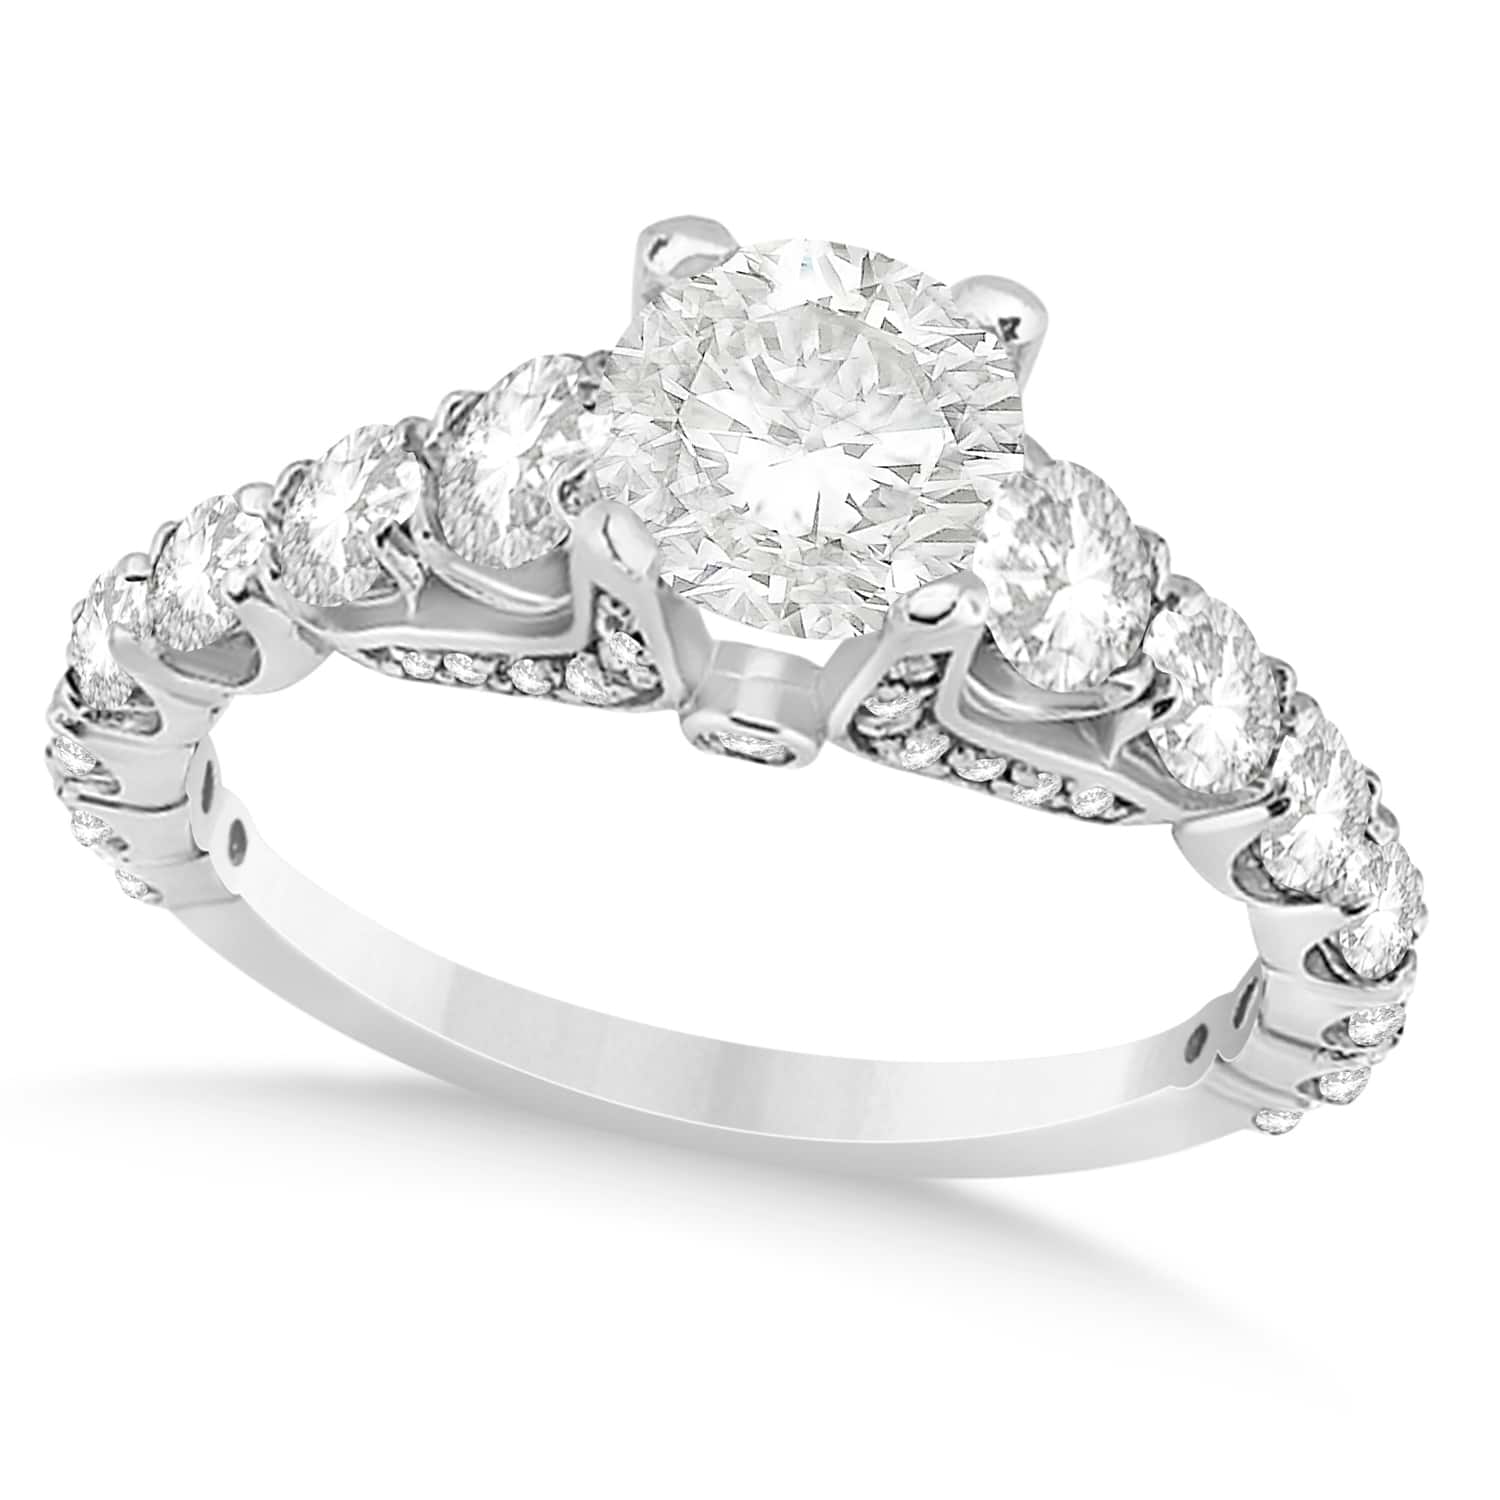 Round Graduating Diamond Engagement Ring 18k White Gold 2.13ct